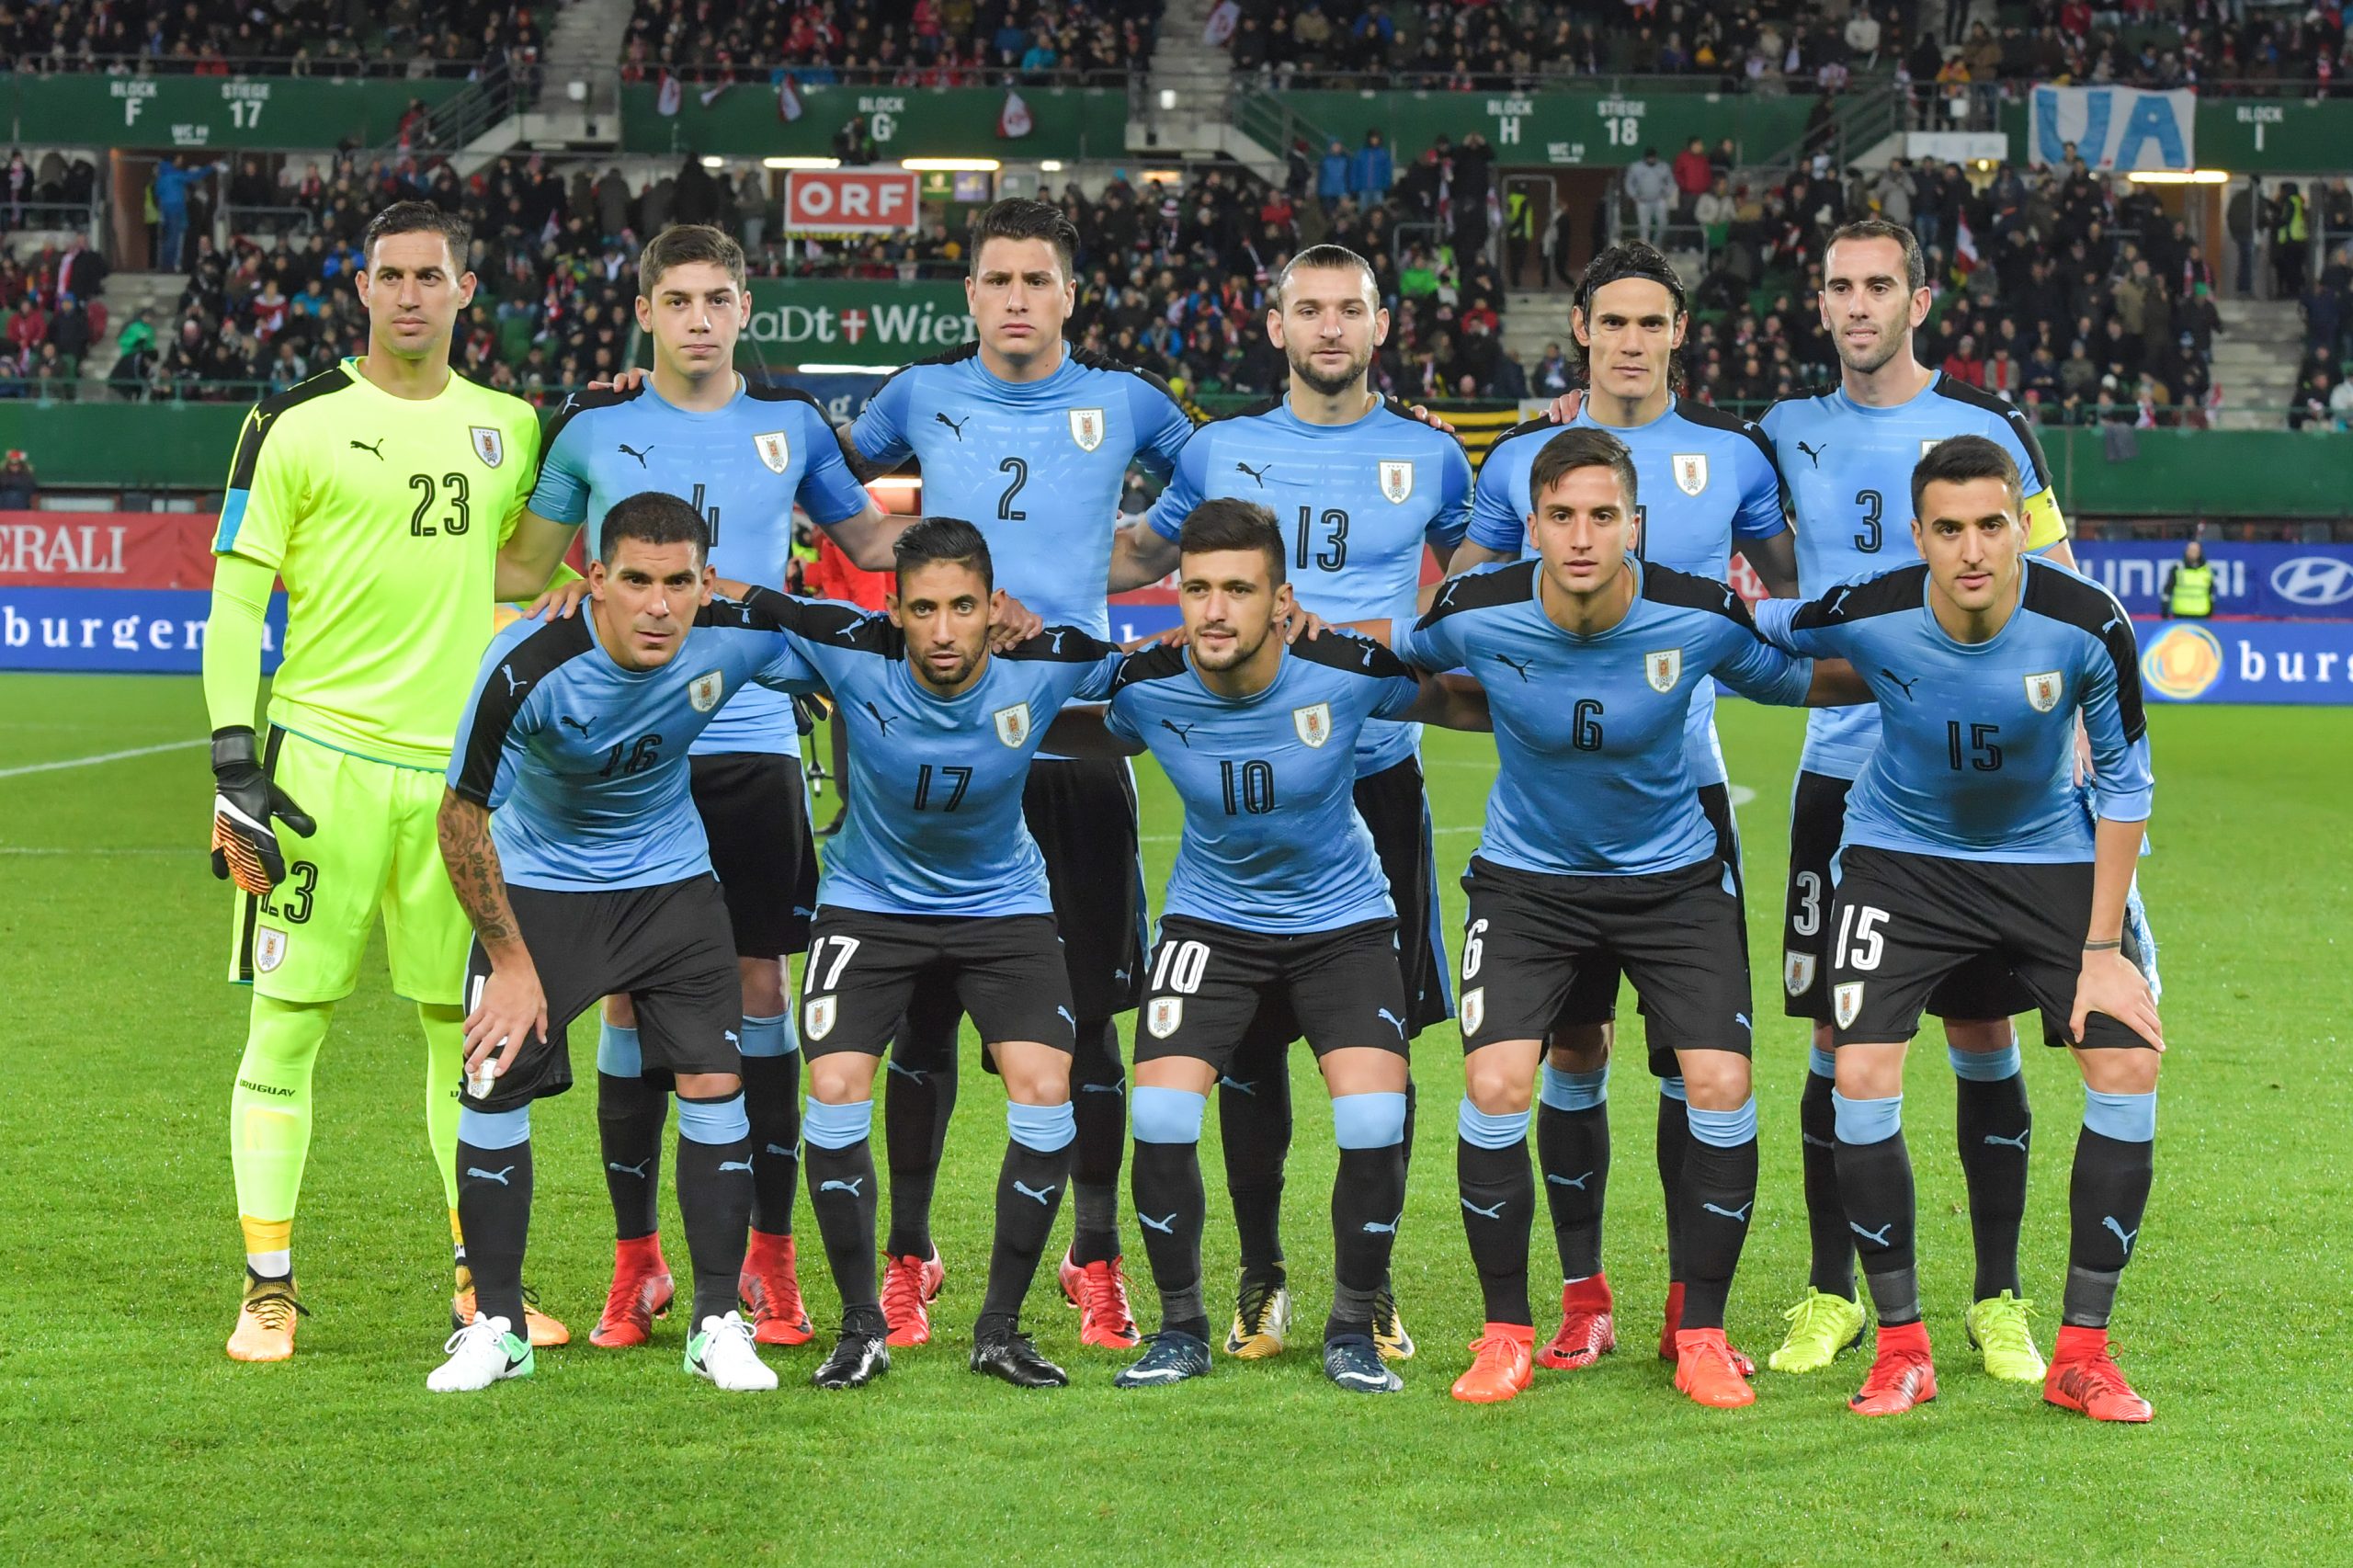 La Liga Uruguay F7 (@laligauruguay) • Instagram photos and videos